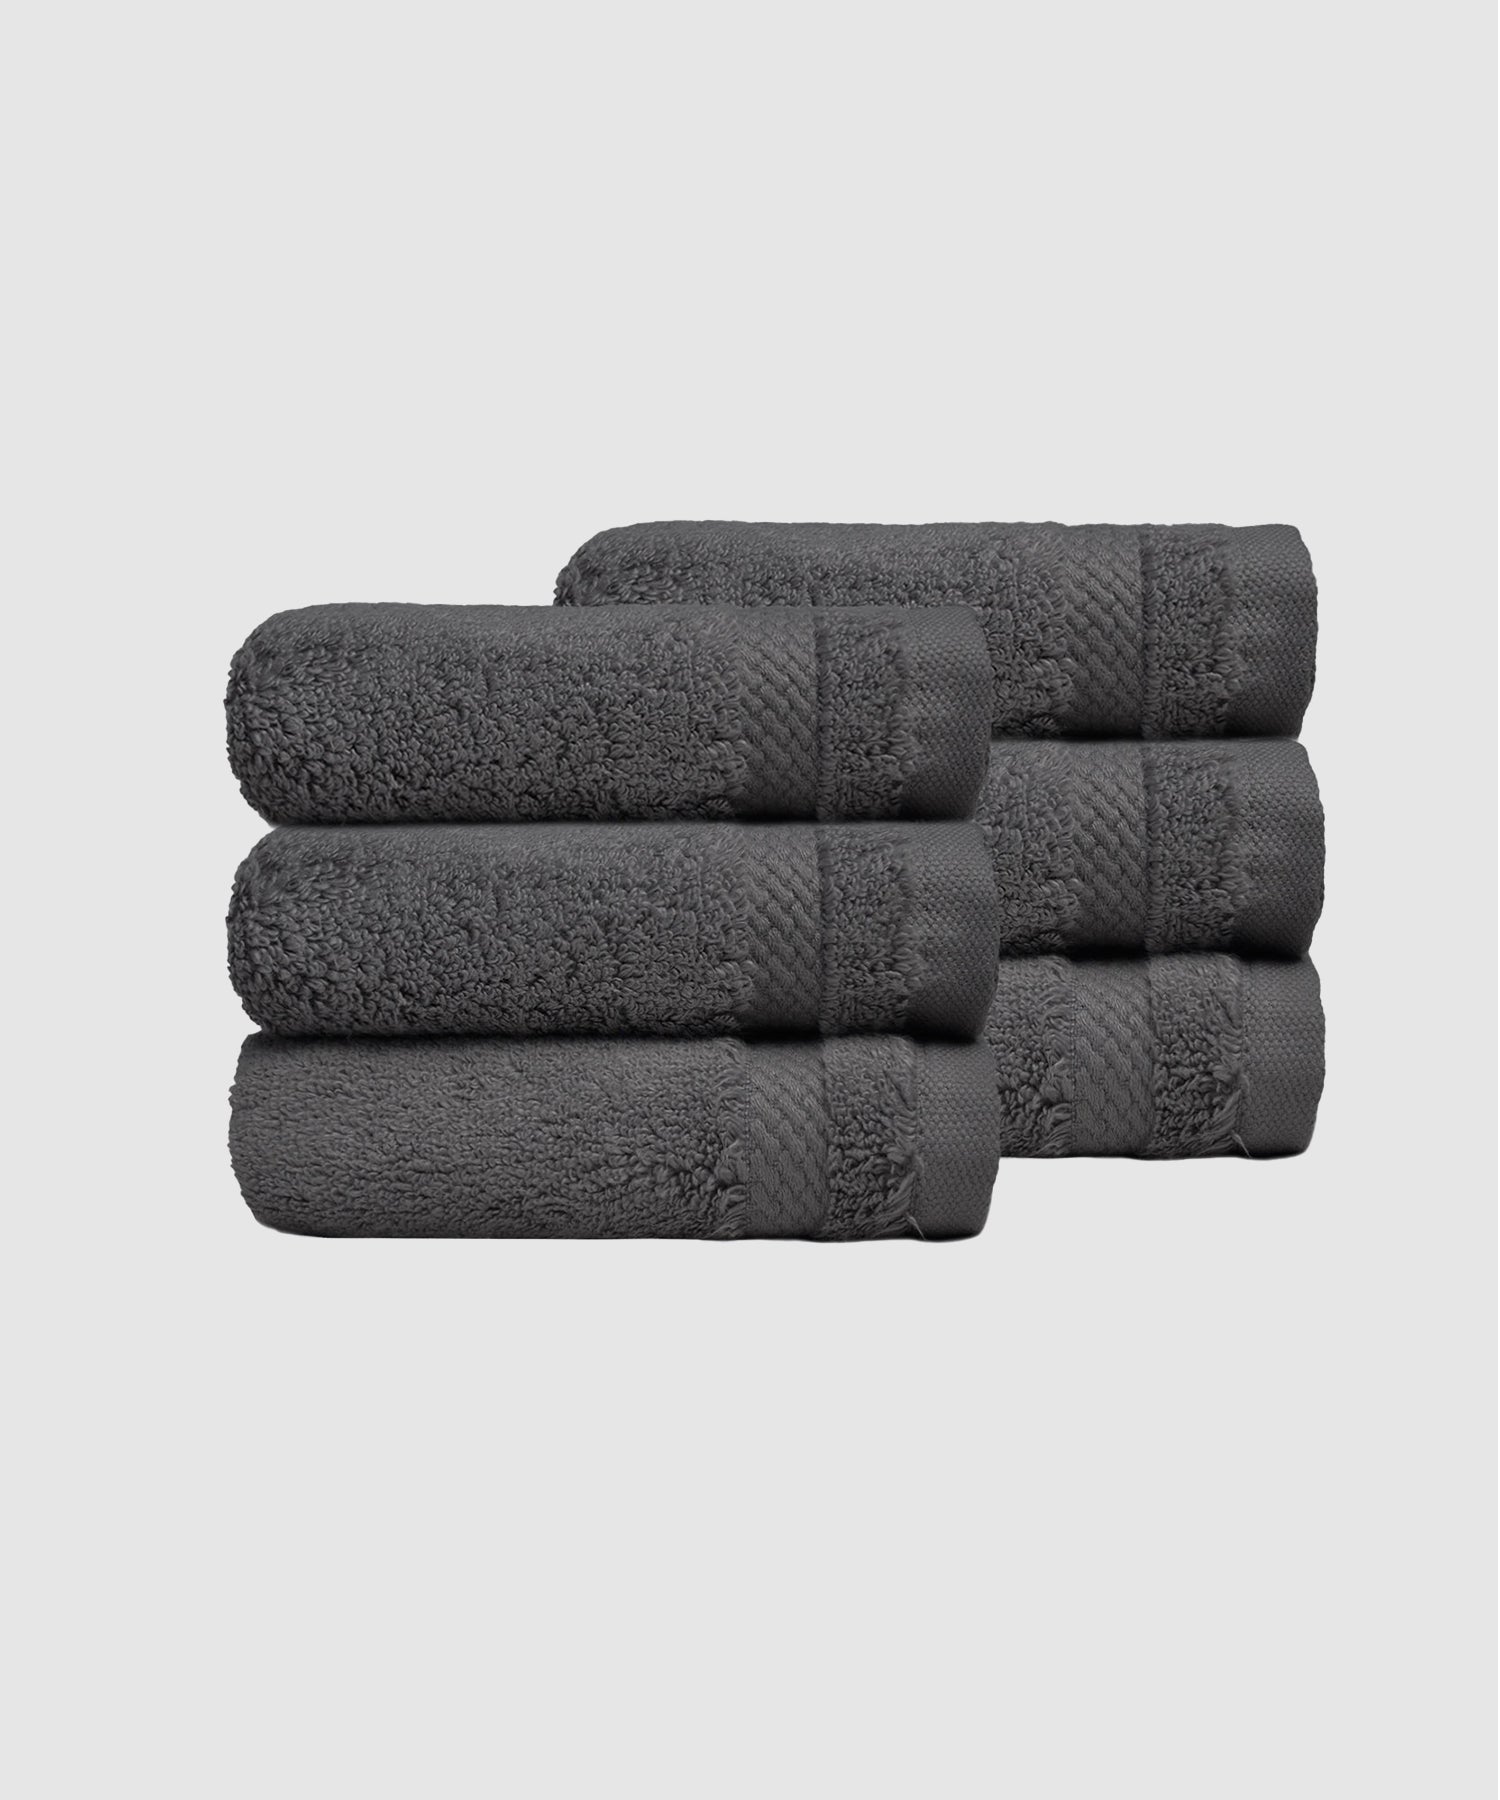 6 Pieces Face Towels ₹599/-